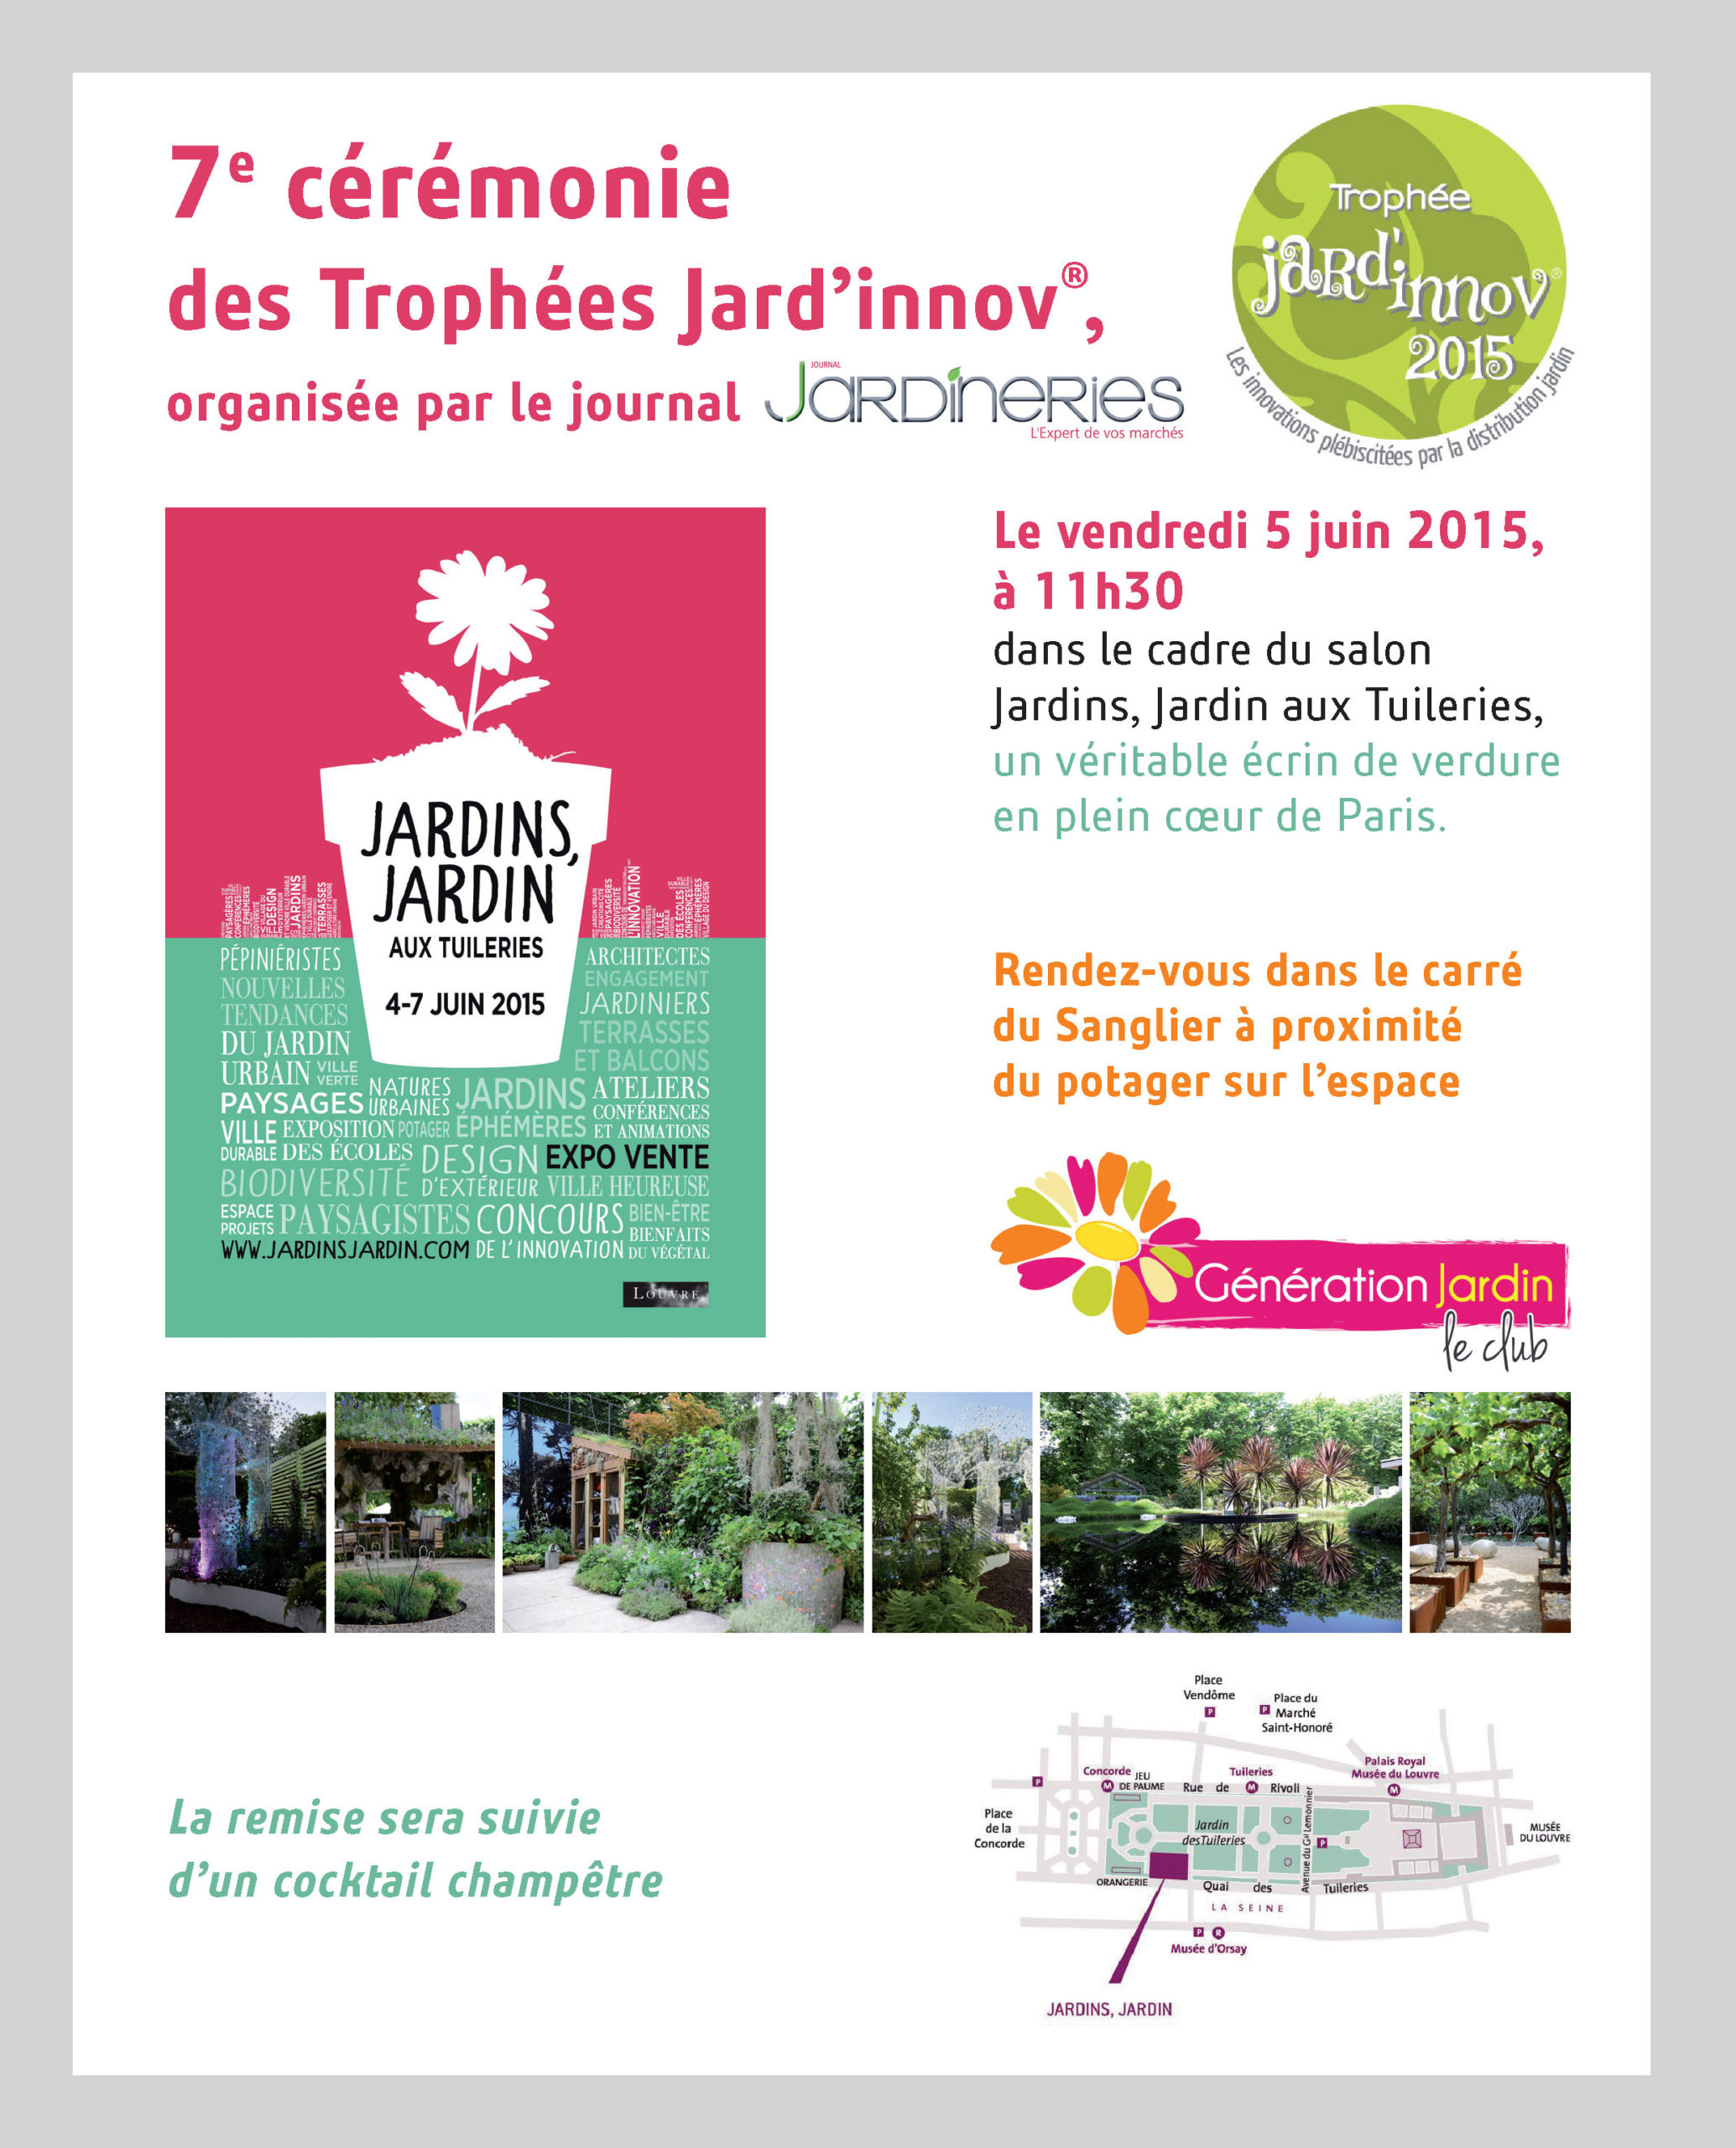 5 Juin 2015 – 7ème cérémonie des Trophées Jard’innov